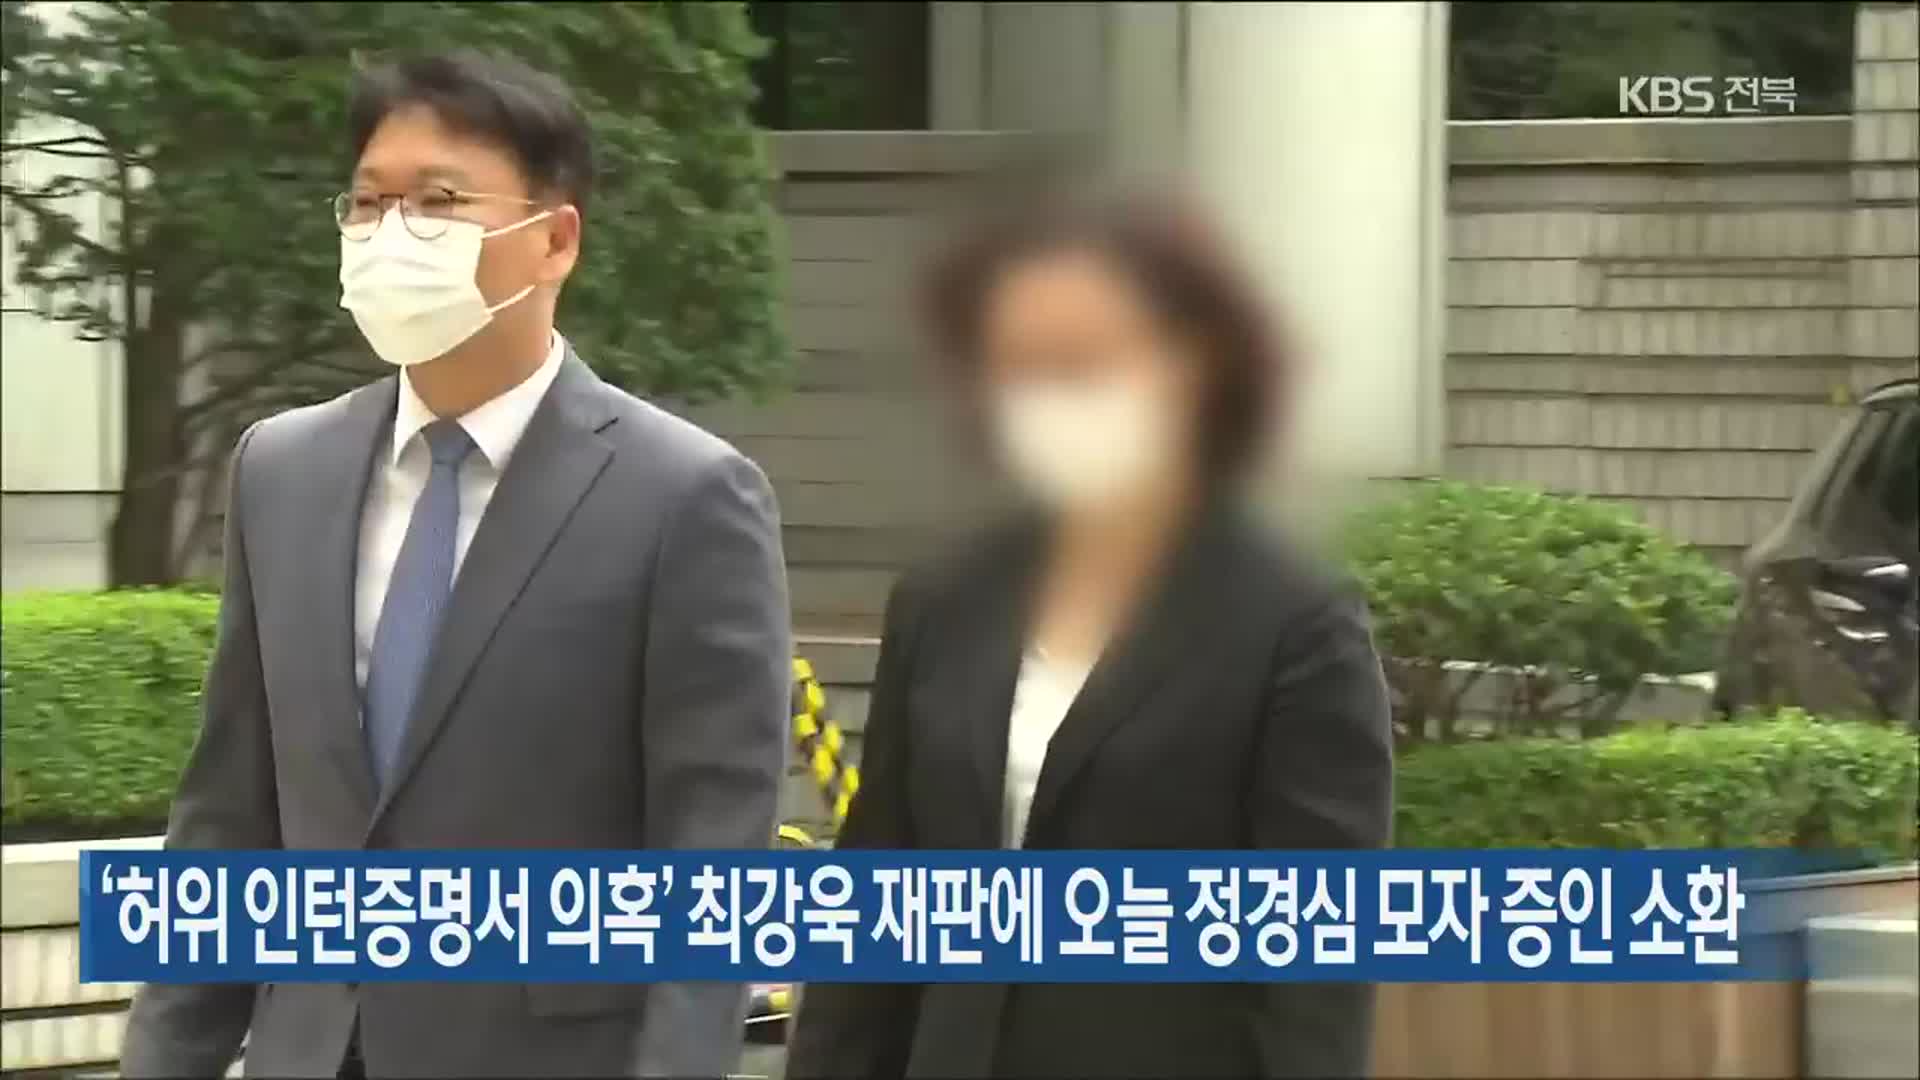 ‘허위 인턴증명서 의혹’ 최강욱 재판에 오늘 정경심 모자 증인 소환